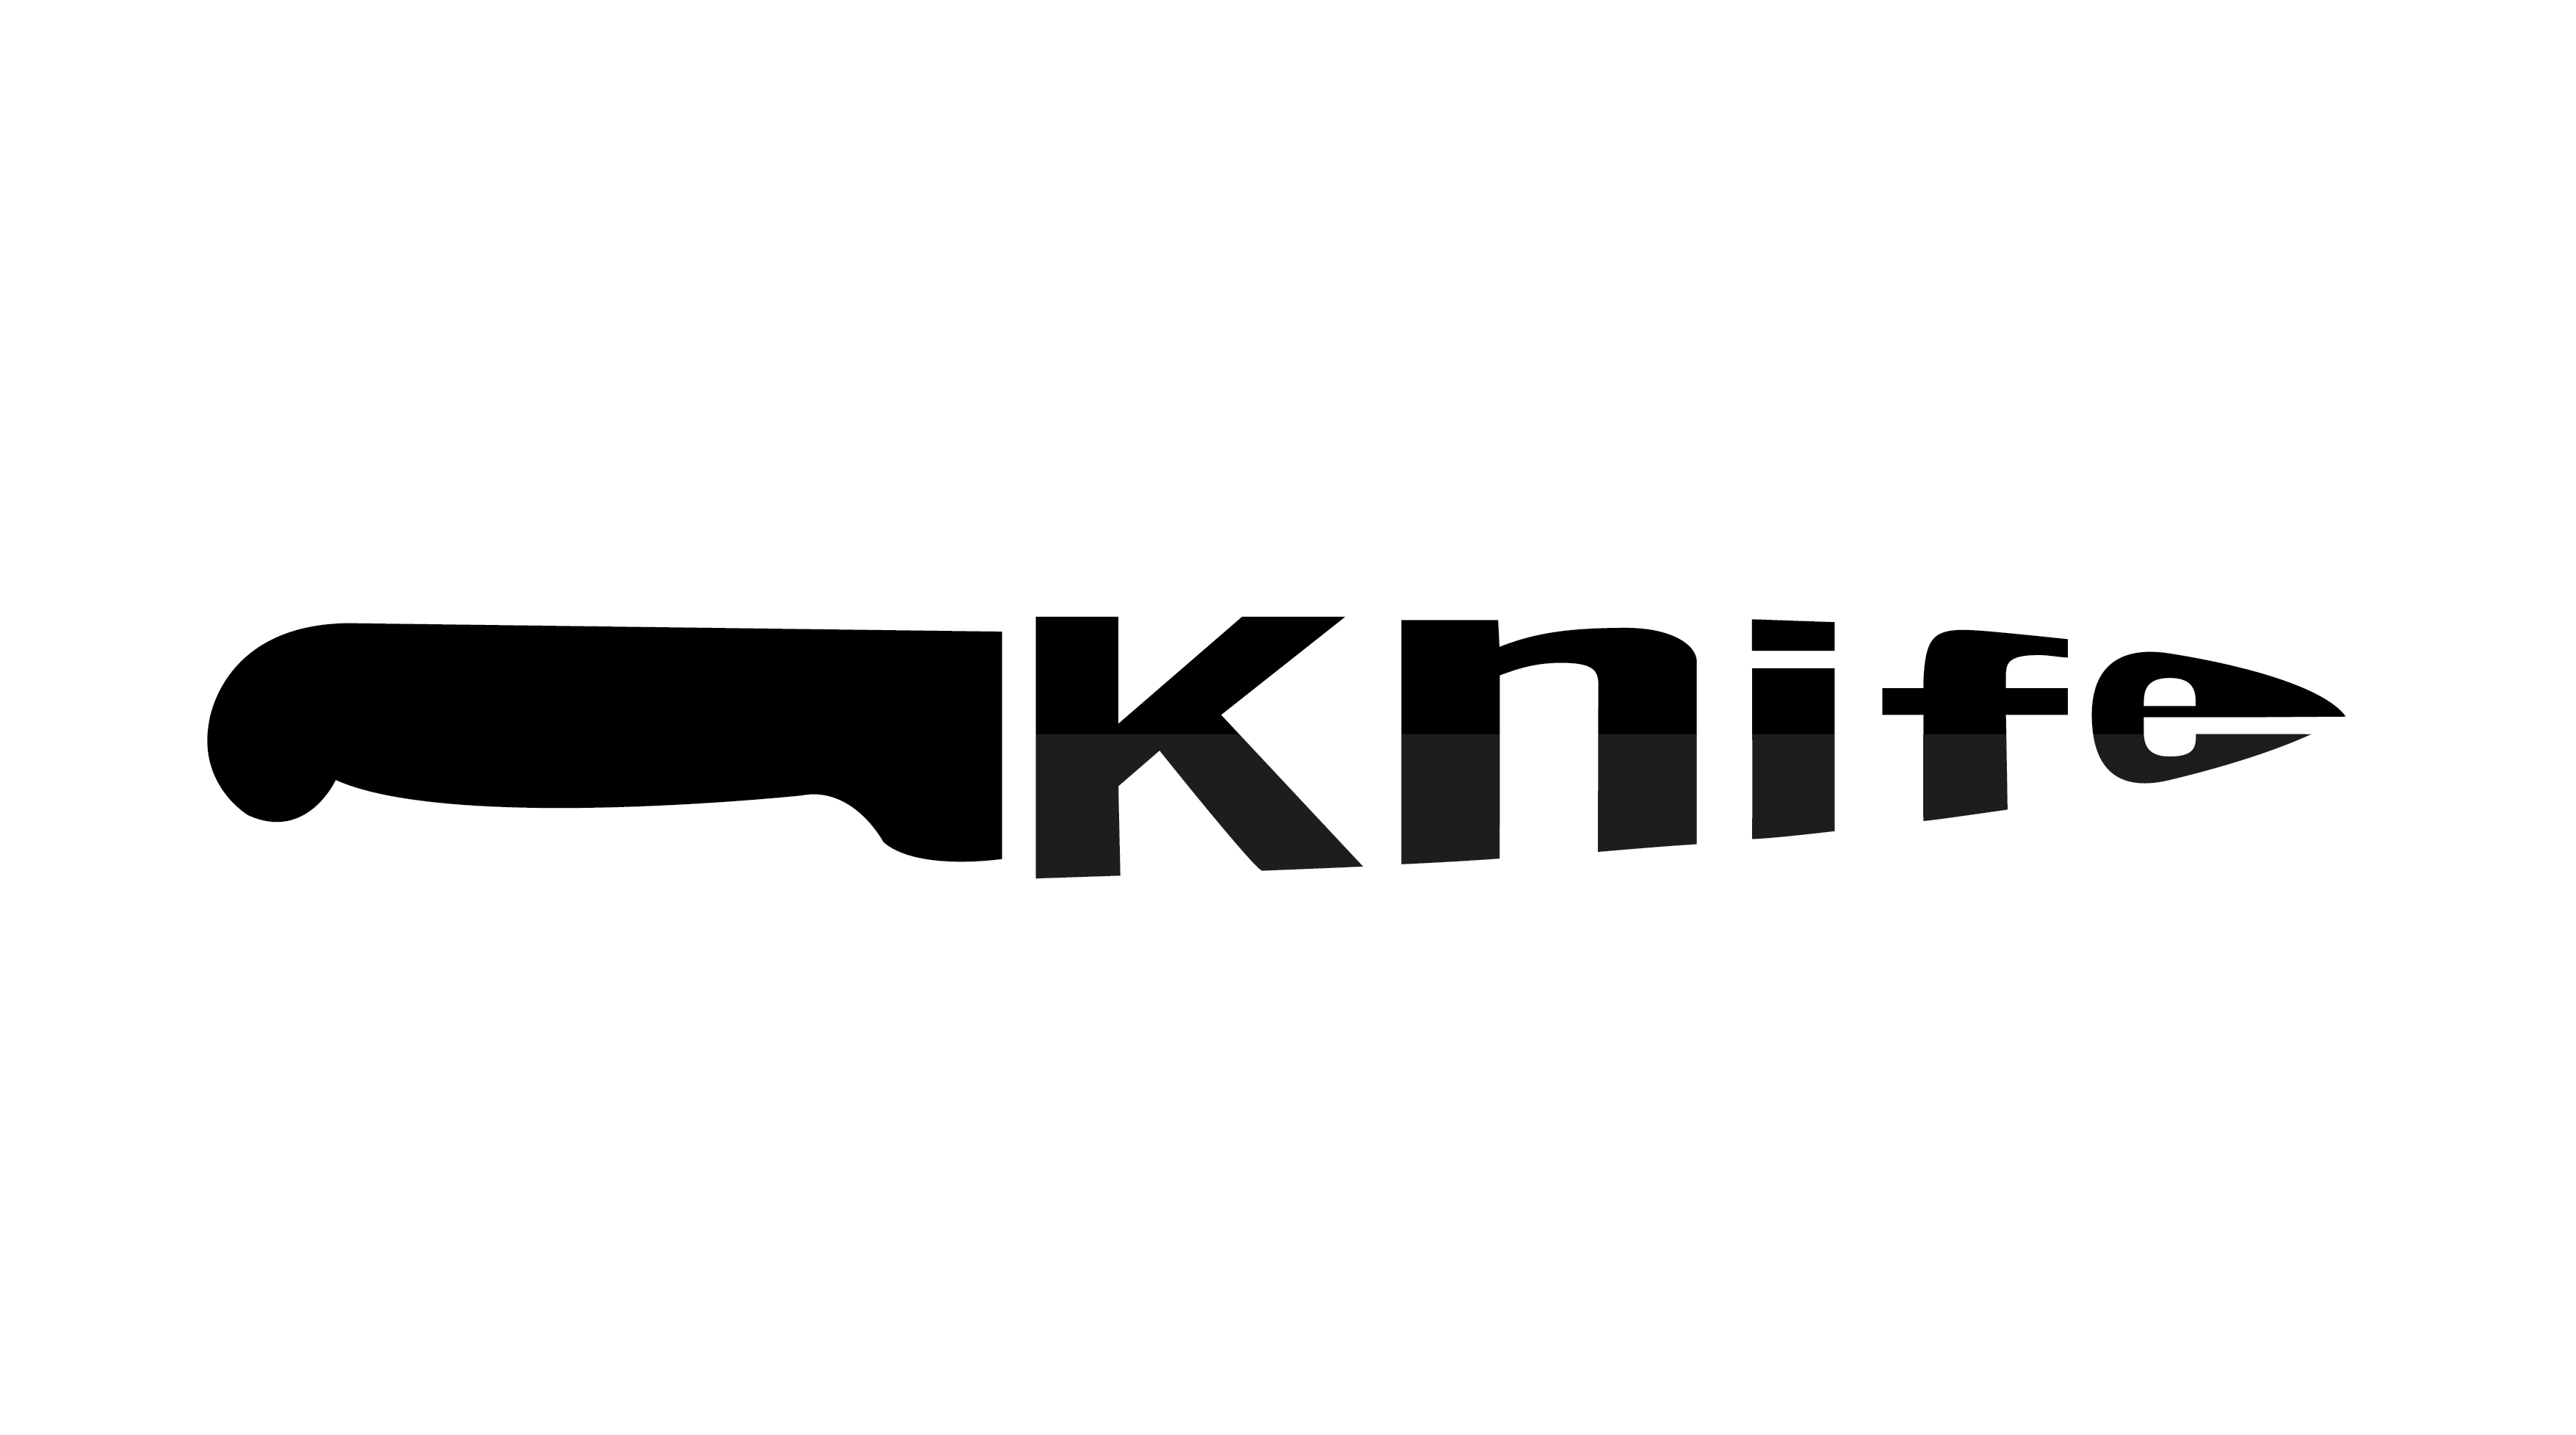 Attēlu rezultāti vaicājumam “Logo with a knife”